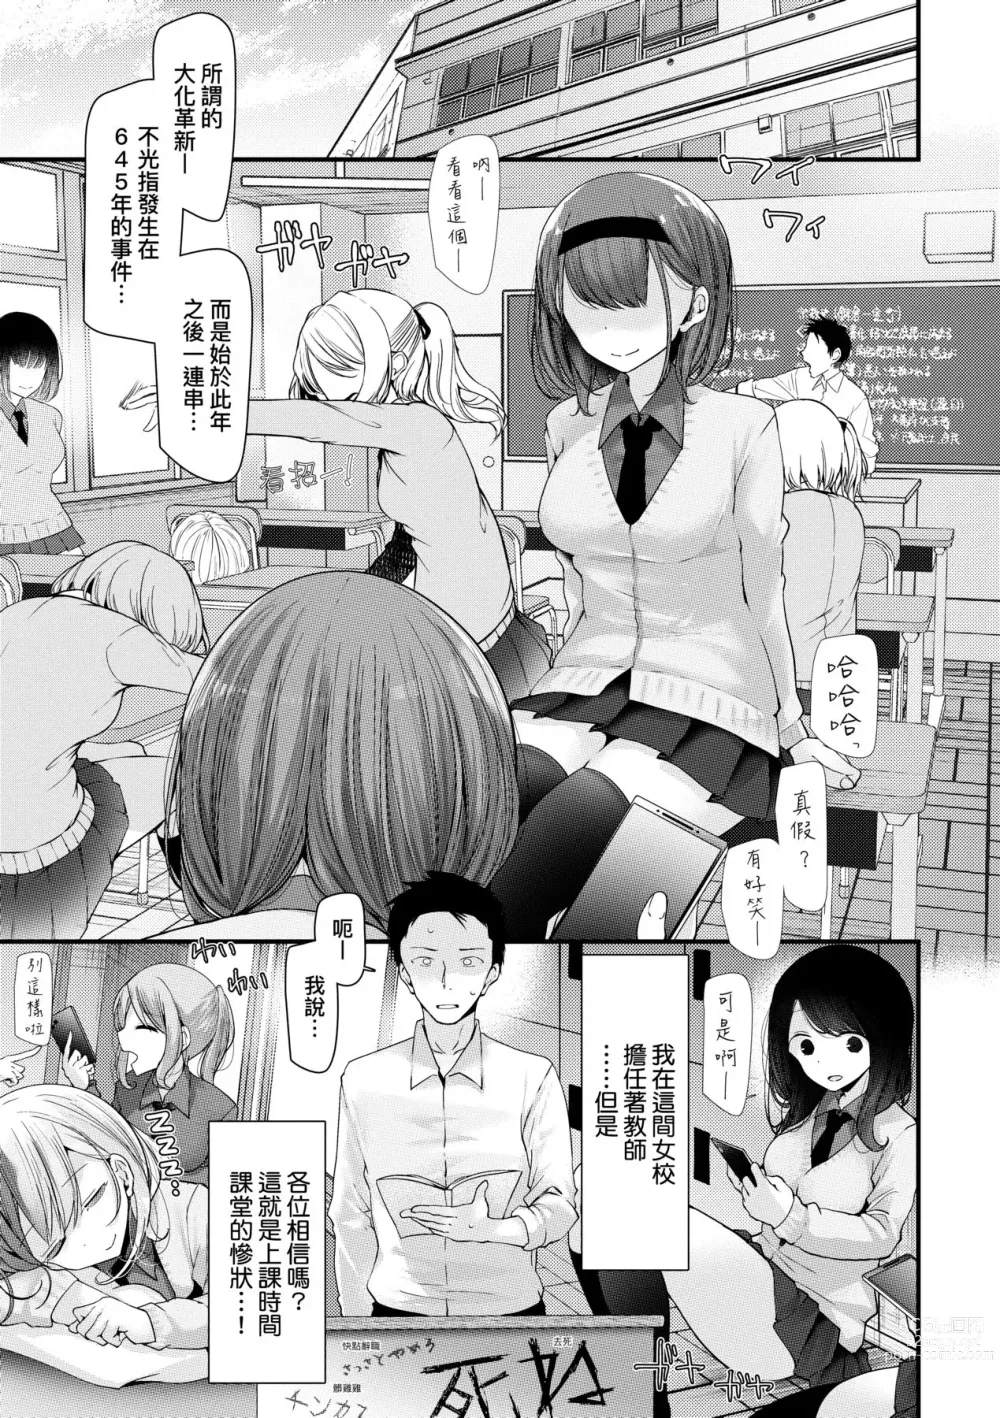 Page 7 of manga 自慰套教室-新學期- 女學生播種懲罰計畫 (decensored)